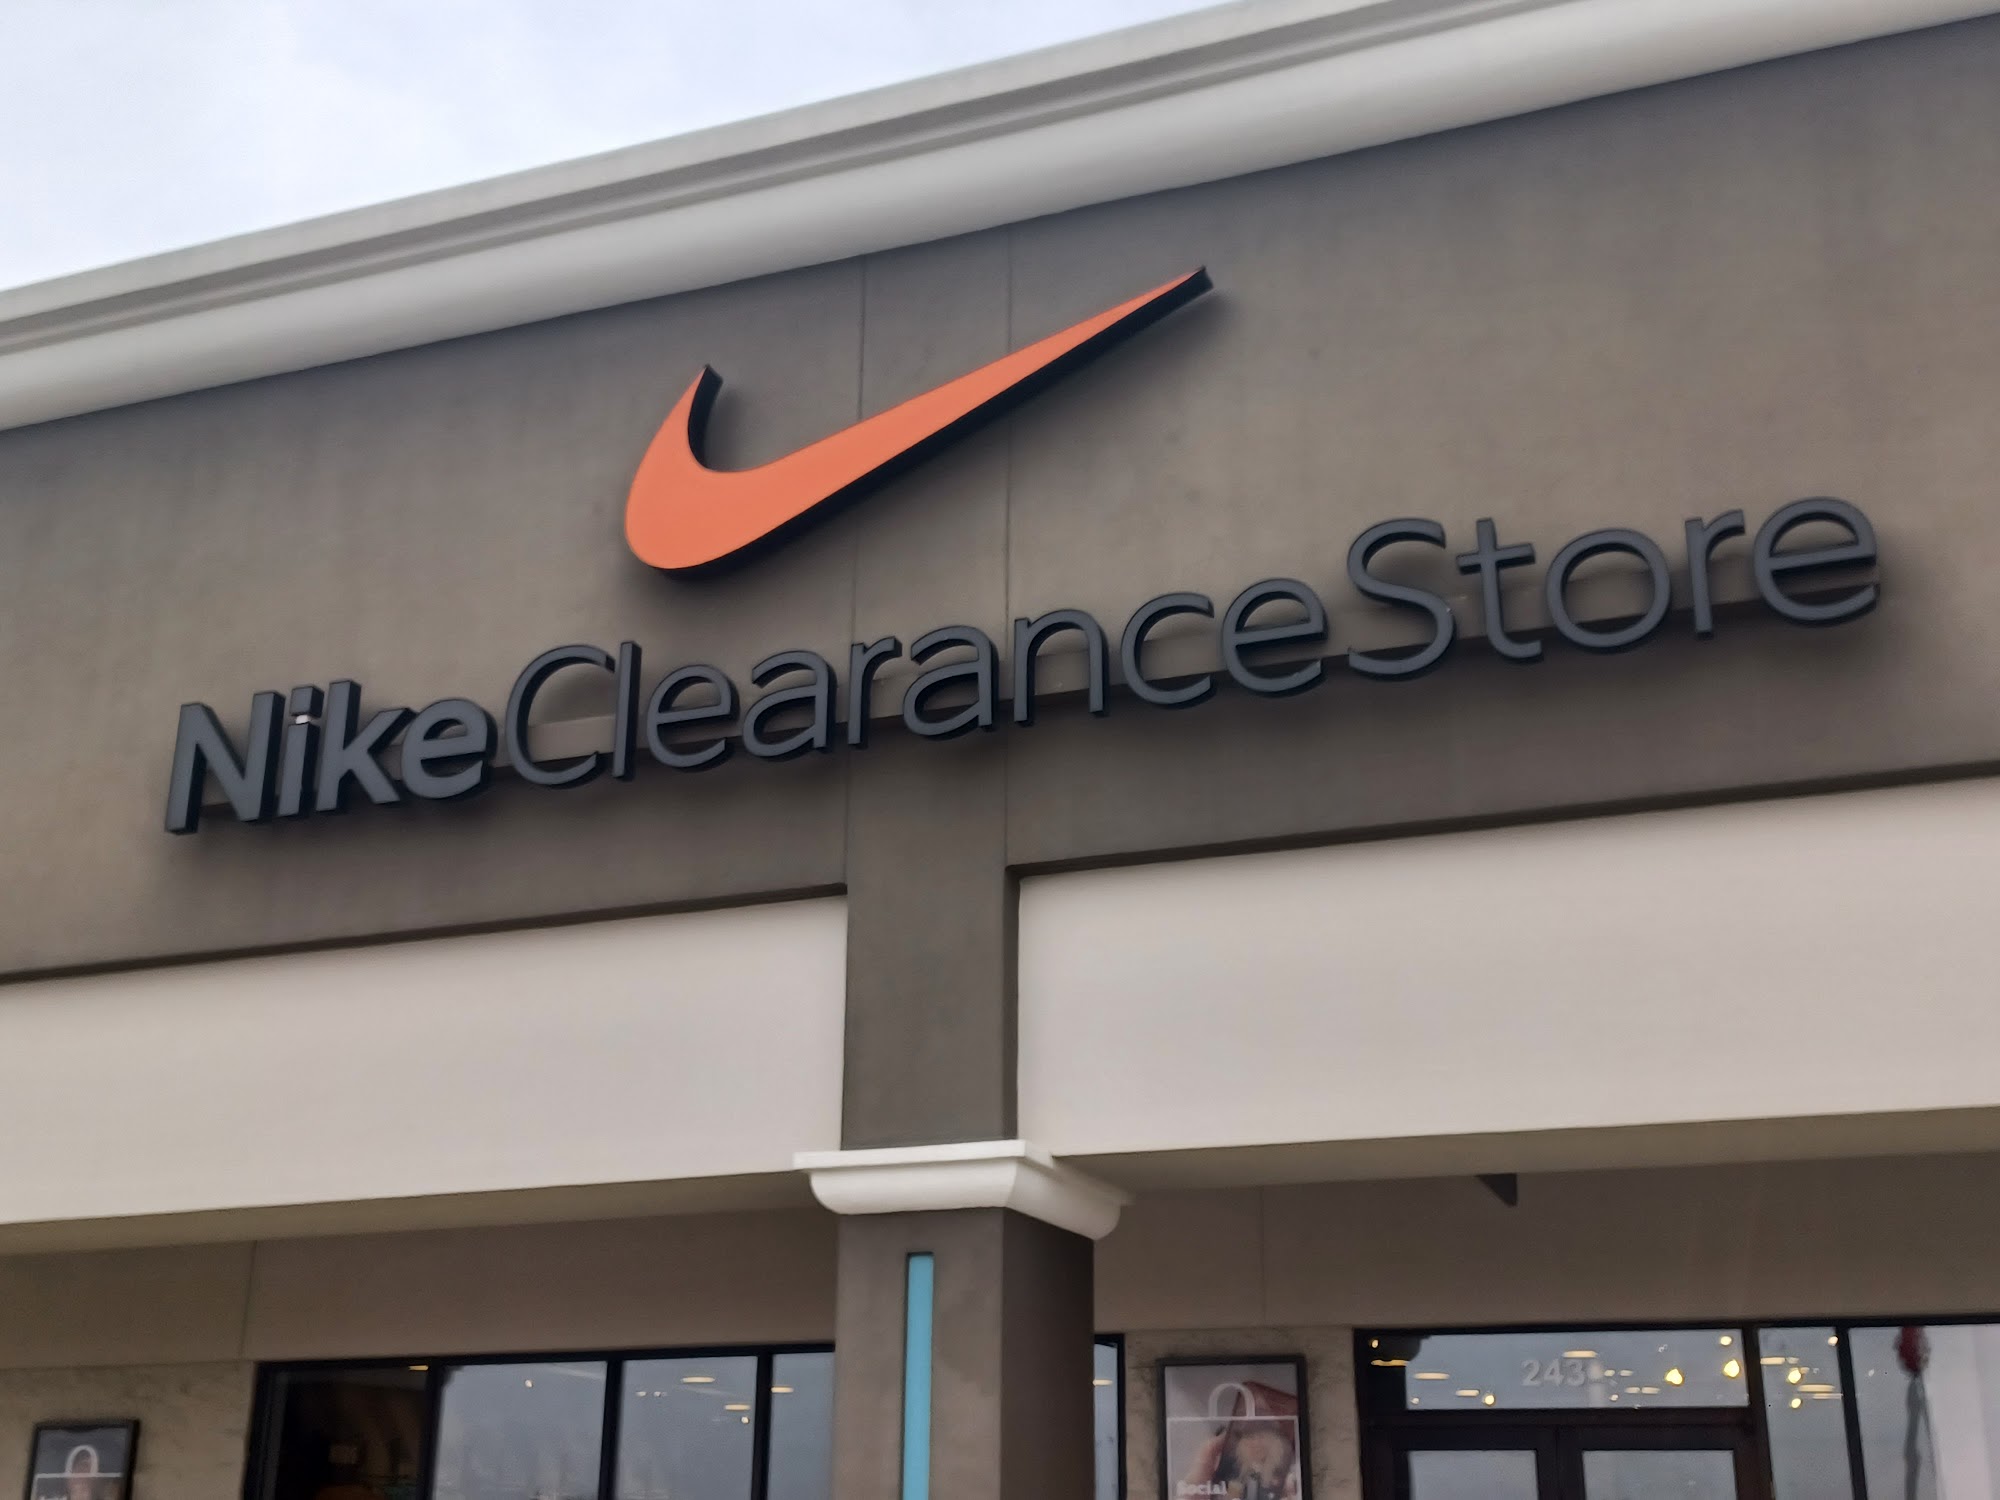 Nike Clearance Store - Williamsburg IA